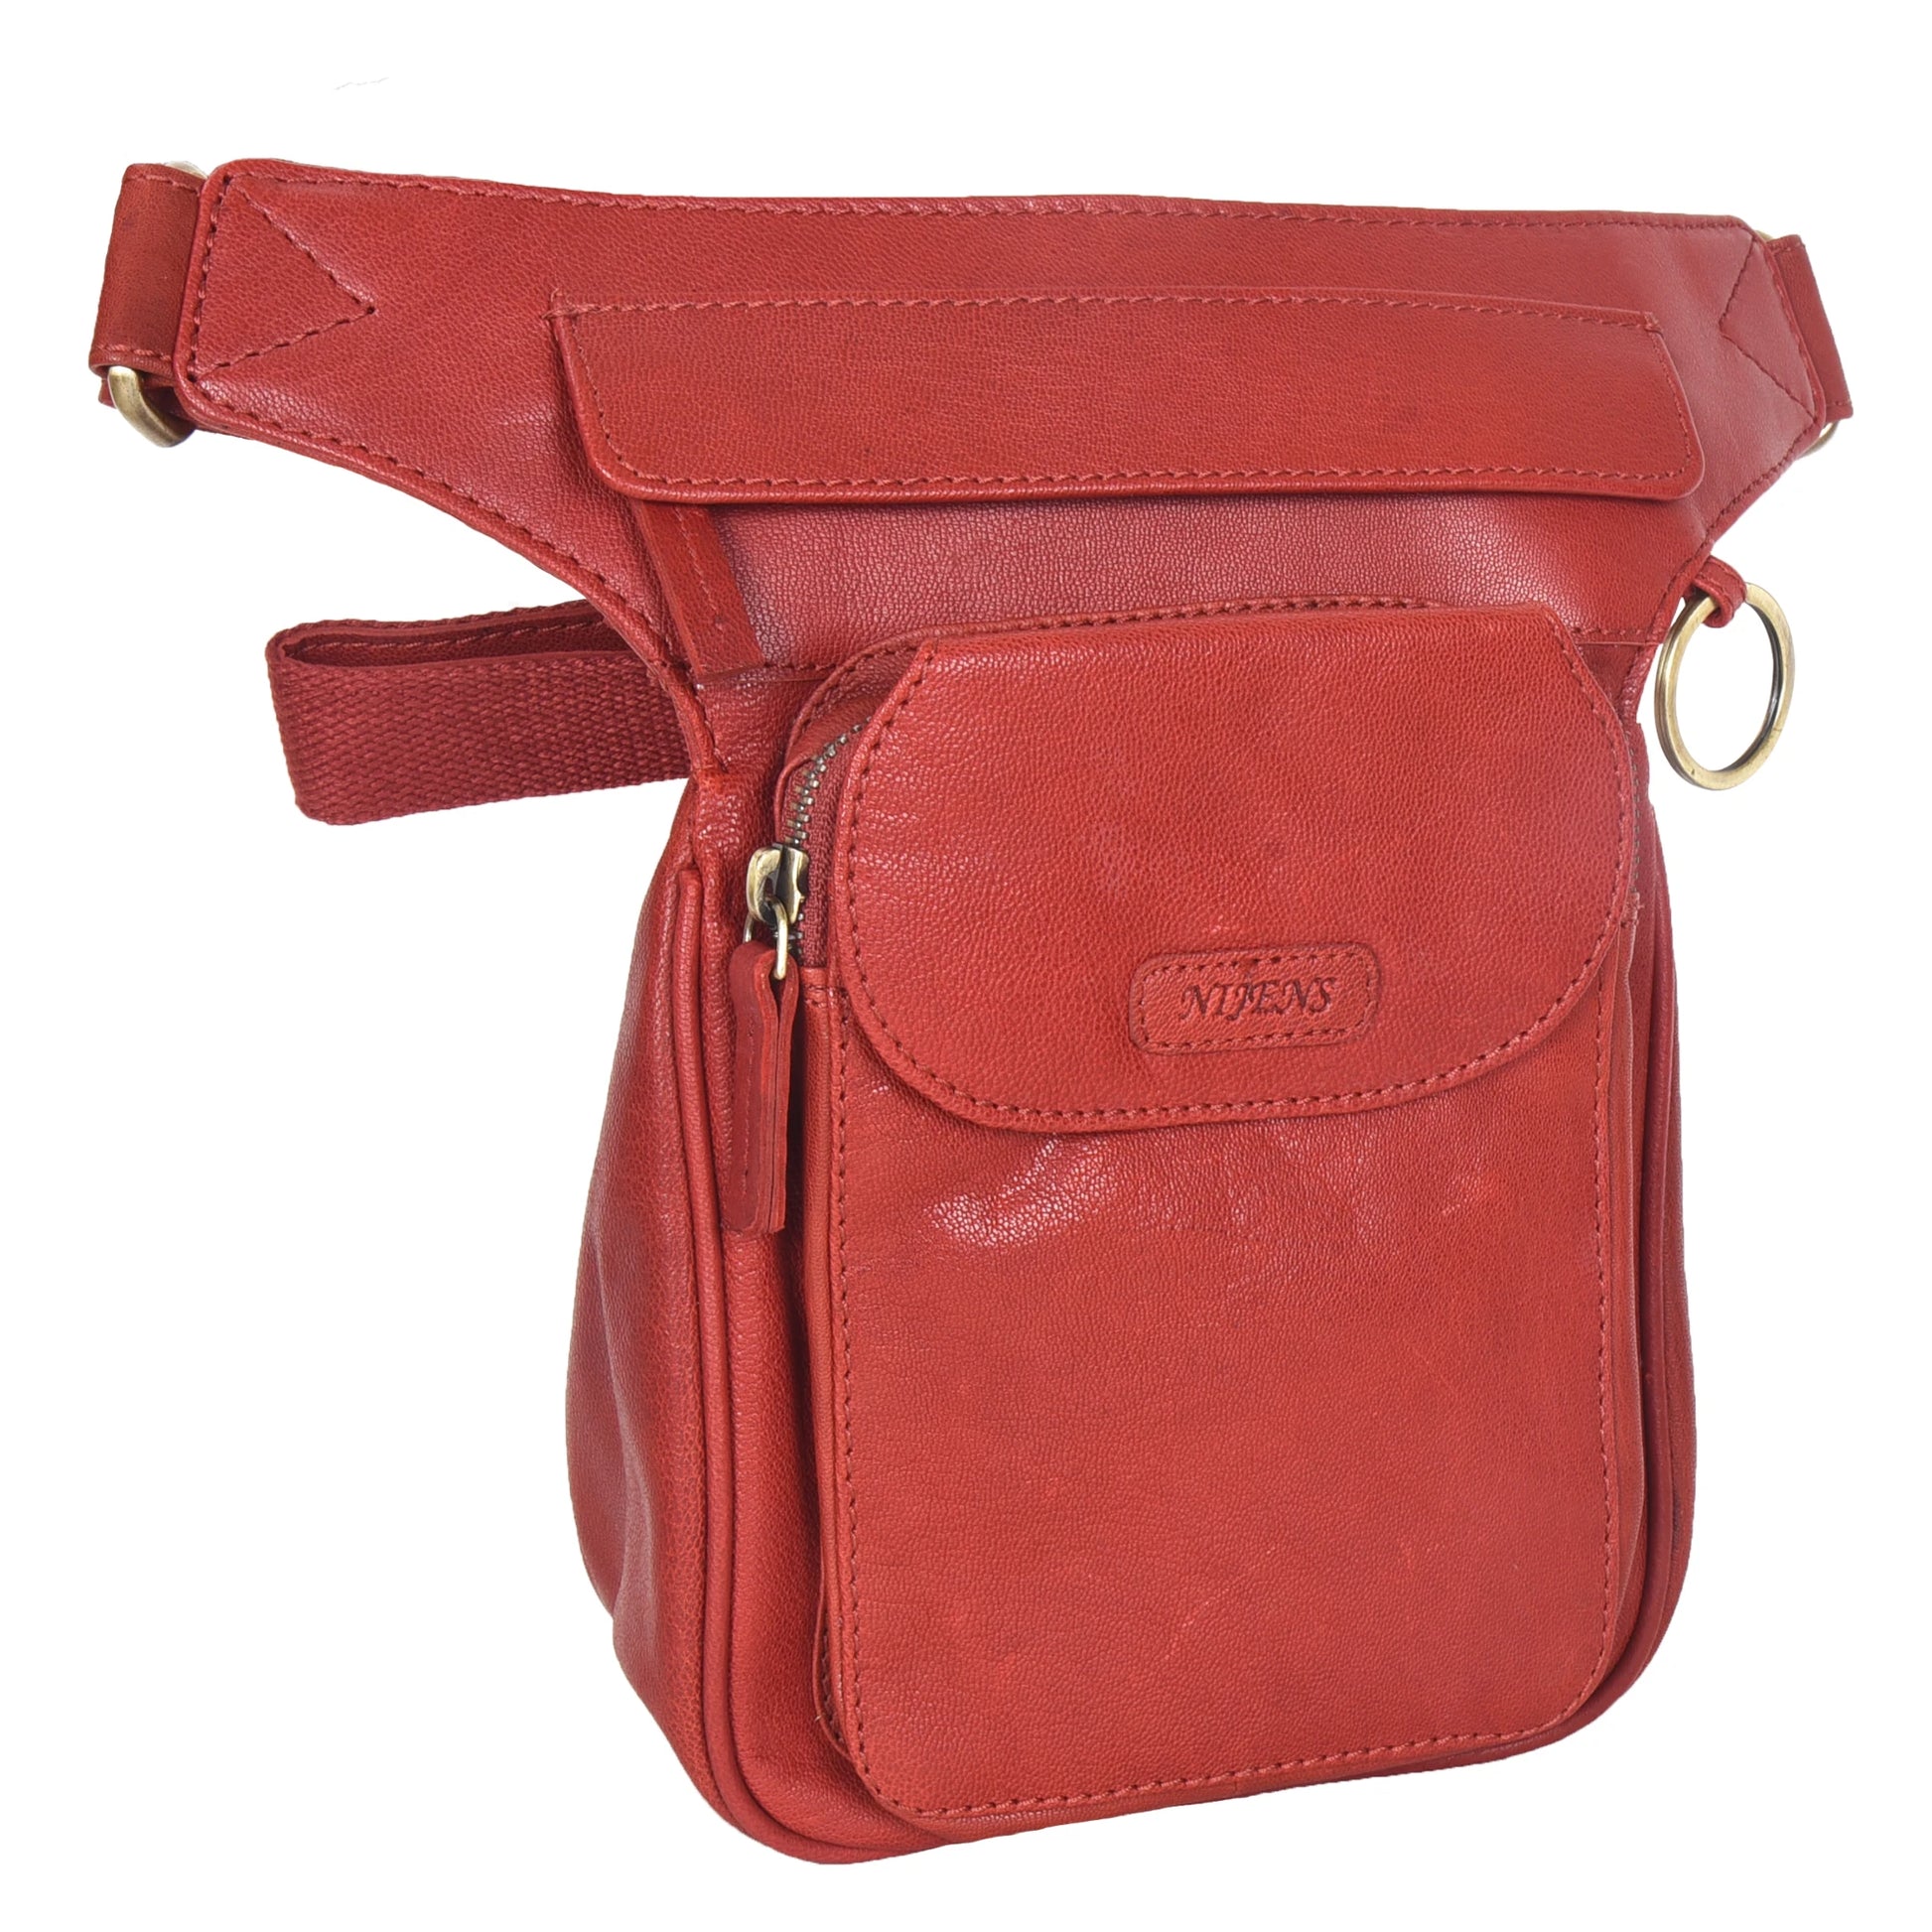 Gürteltasche, Gassi-Tasche Leder Rot, mit einem Ring zum Befestigen von kleinen Sachen. Diese Tasche verfügt über drei Reißverschlussfächer und einem Einsteckfach vorne welches durch einen Überschlag mit Druckknopf verschließbar ist.